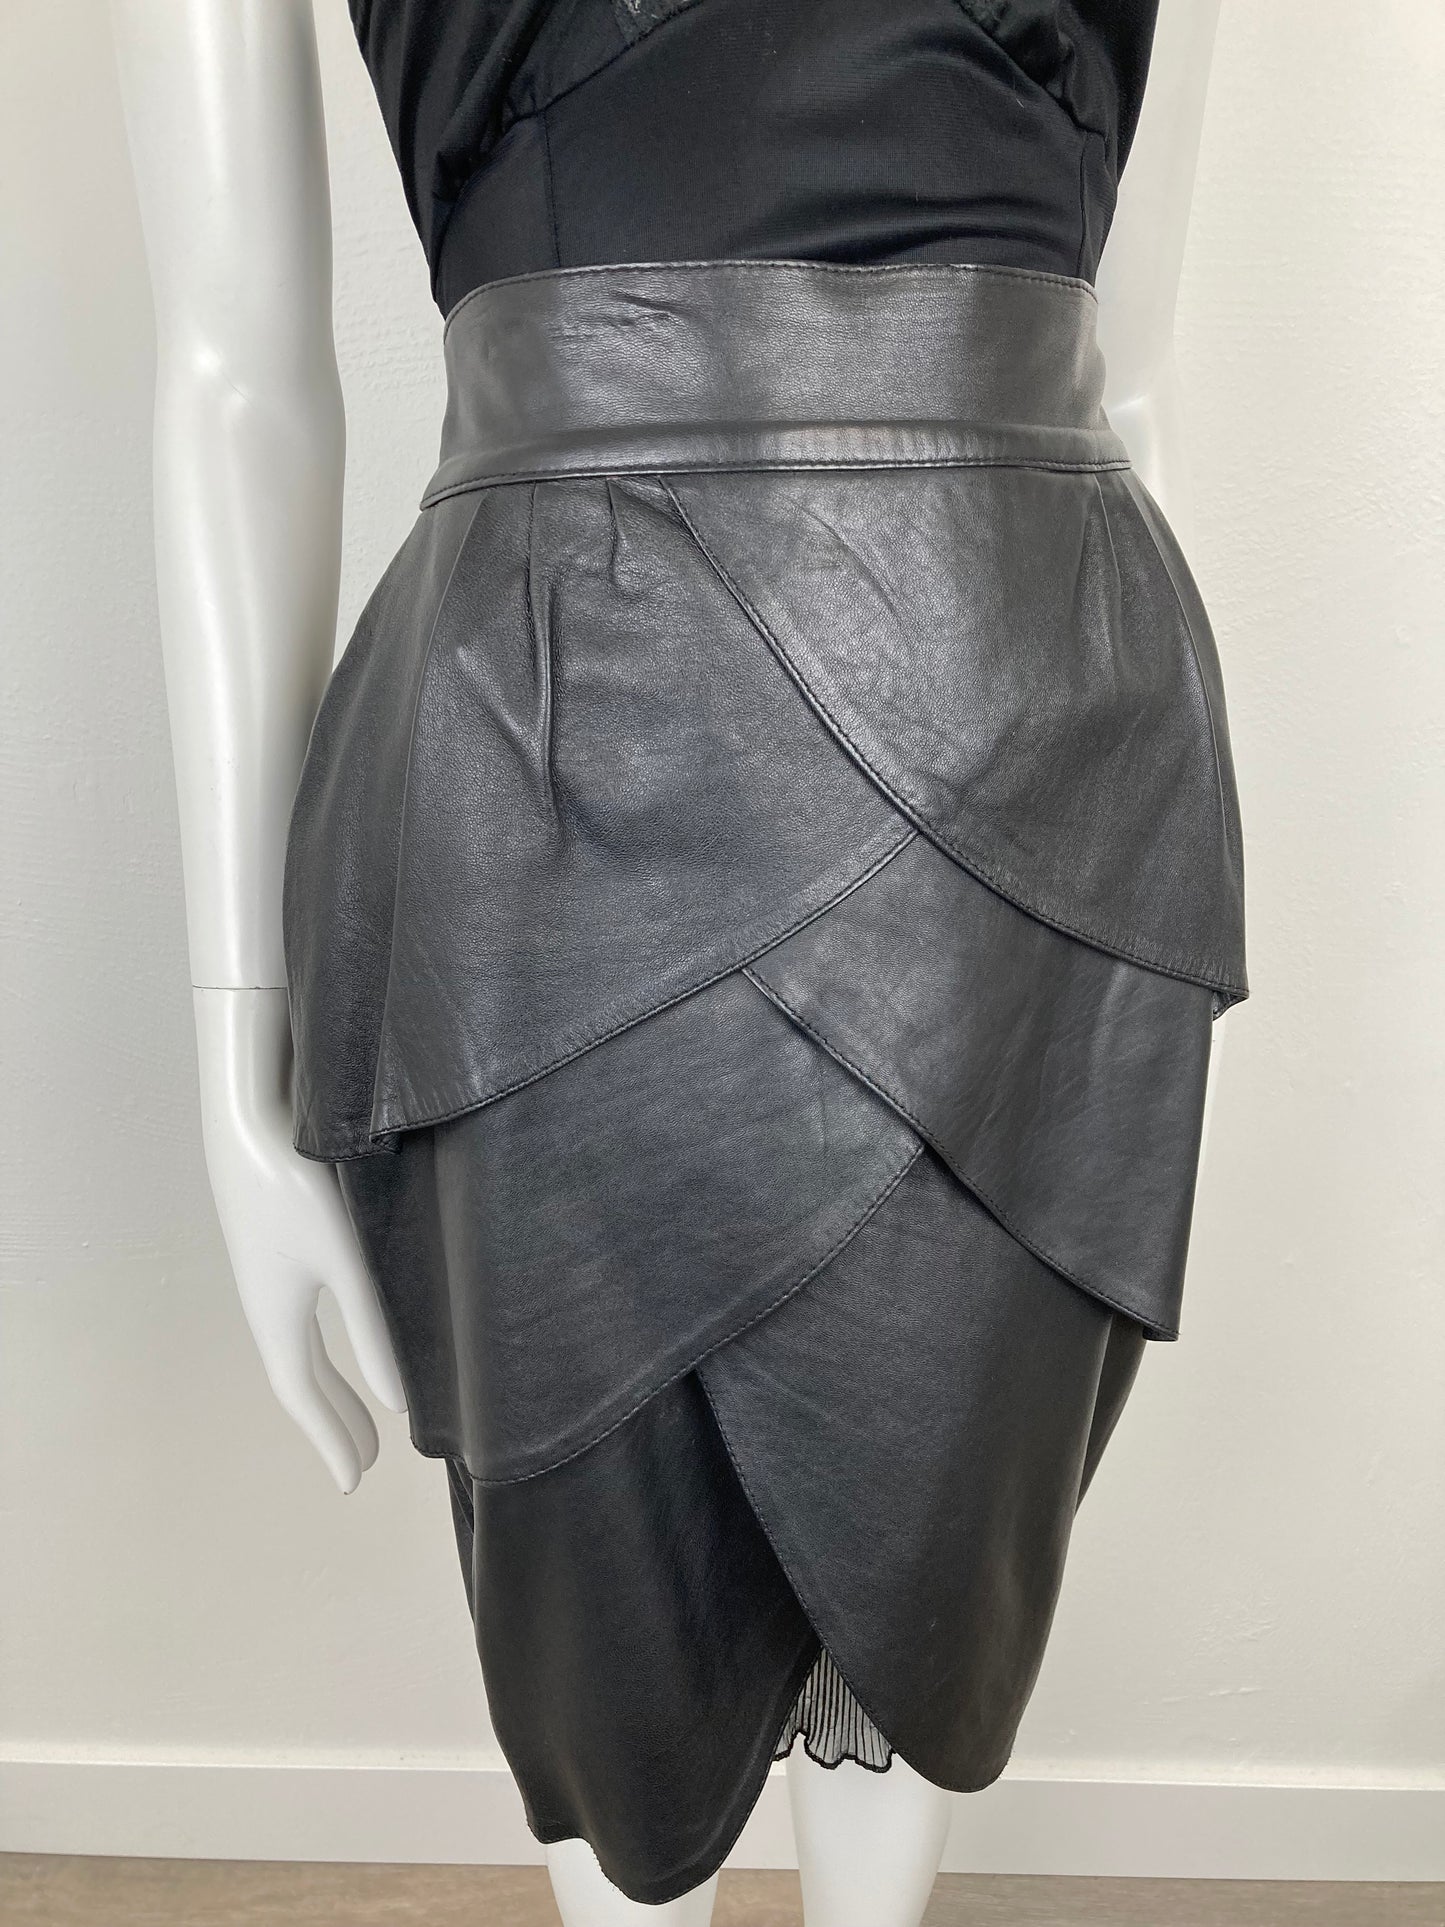 80s Black Leather Petal Tiered Skirt, Italian Leather Skirt, Funky Hight Waisted Black Leather Skirt